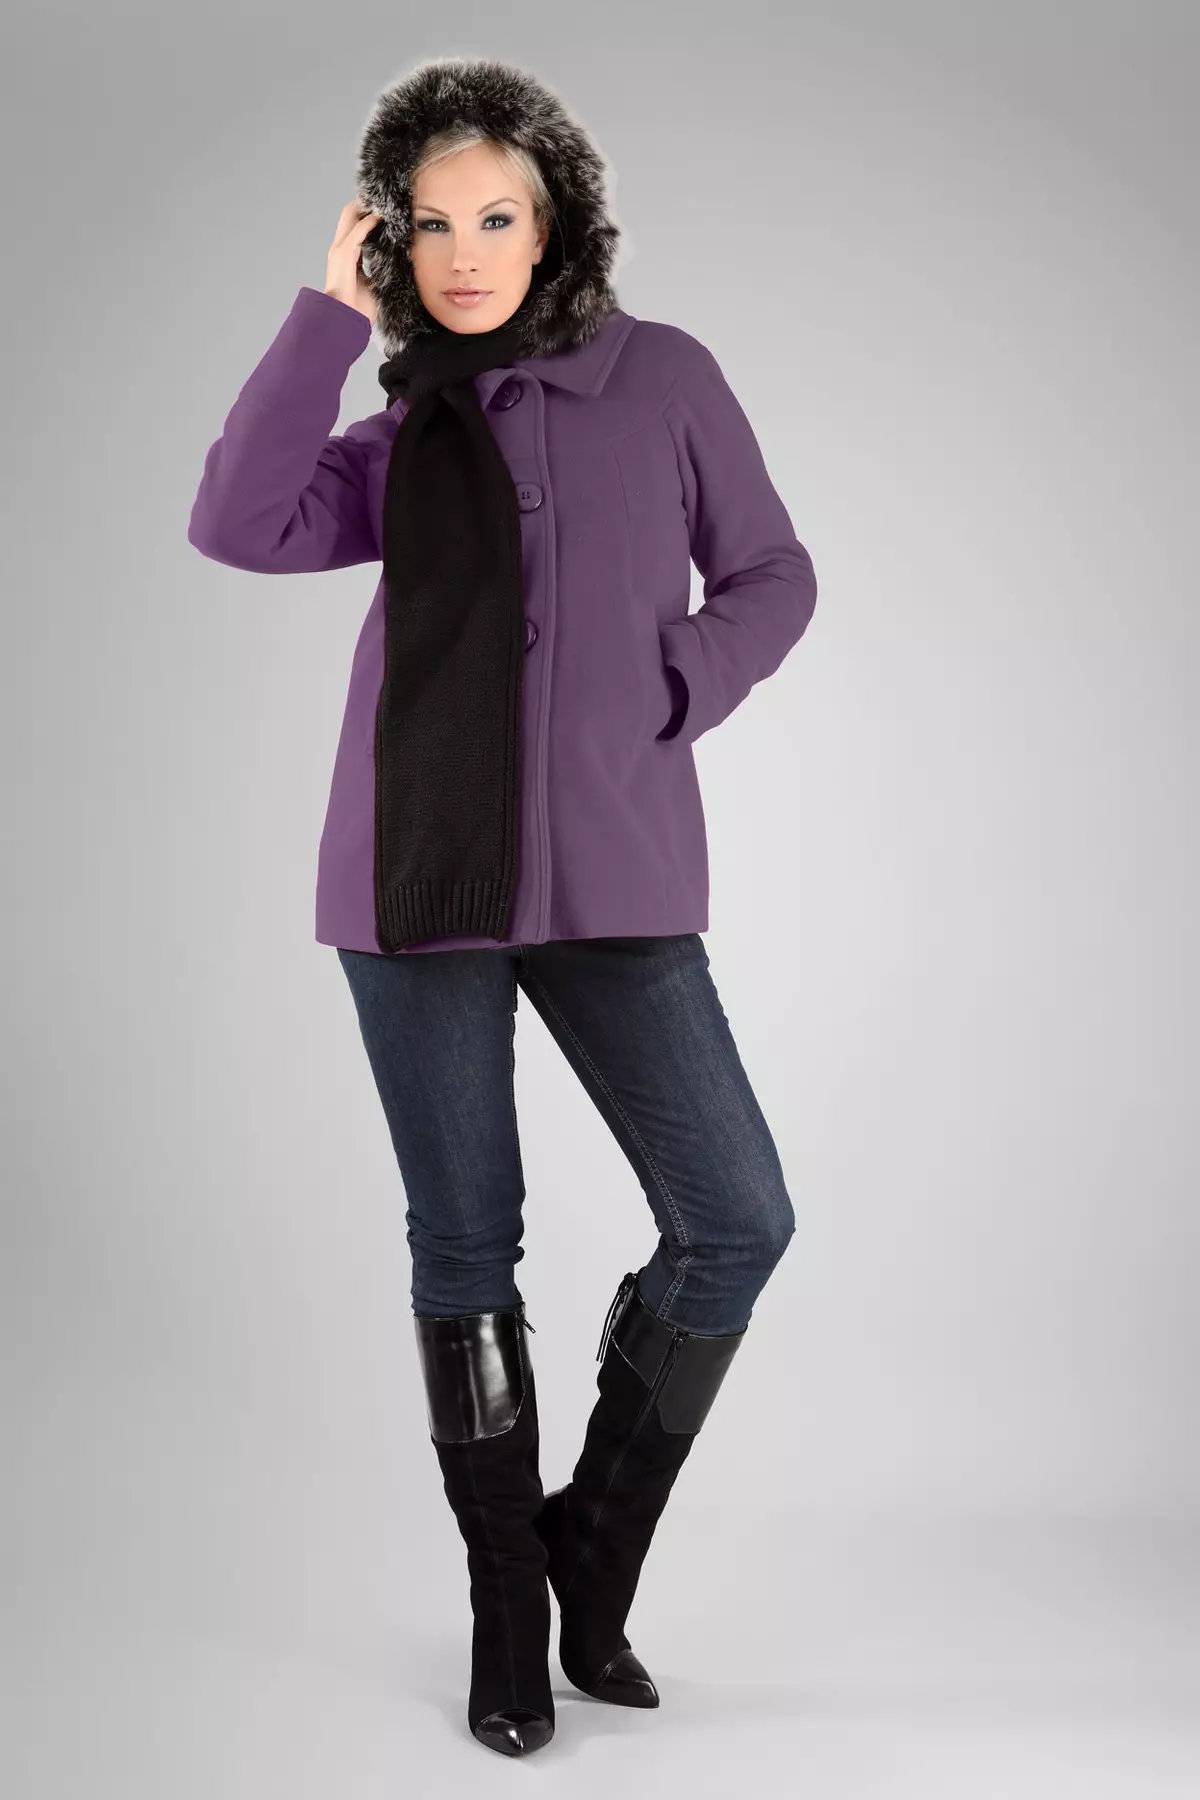 Purpurroter Mantel (31 Fotos): Stilvolle weibliche Mantel dunkelpurpurroter Farbe, was für eine Tasche und ein anderes Zubehör ist geeignet 494_24